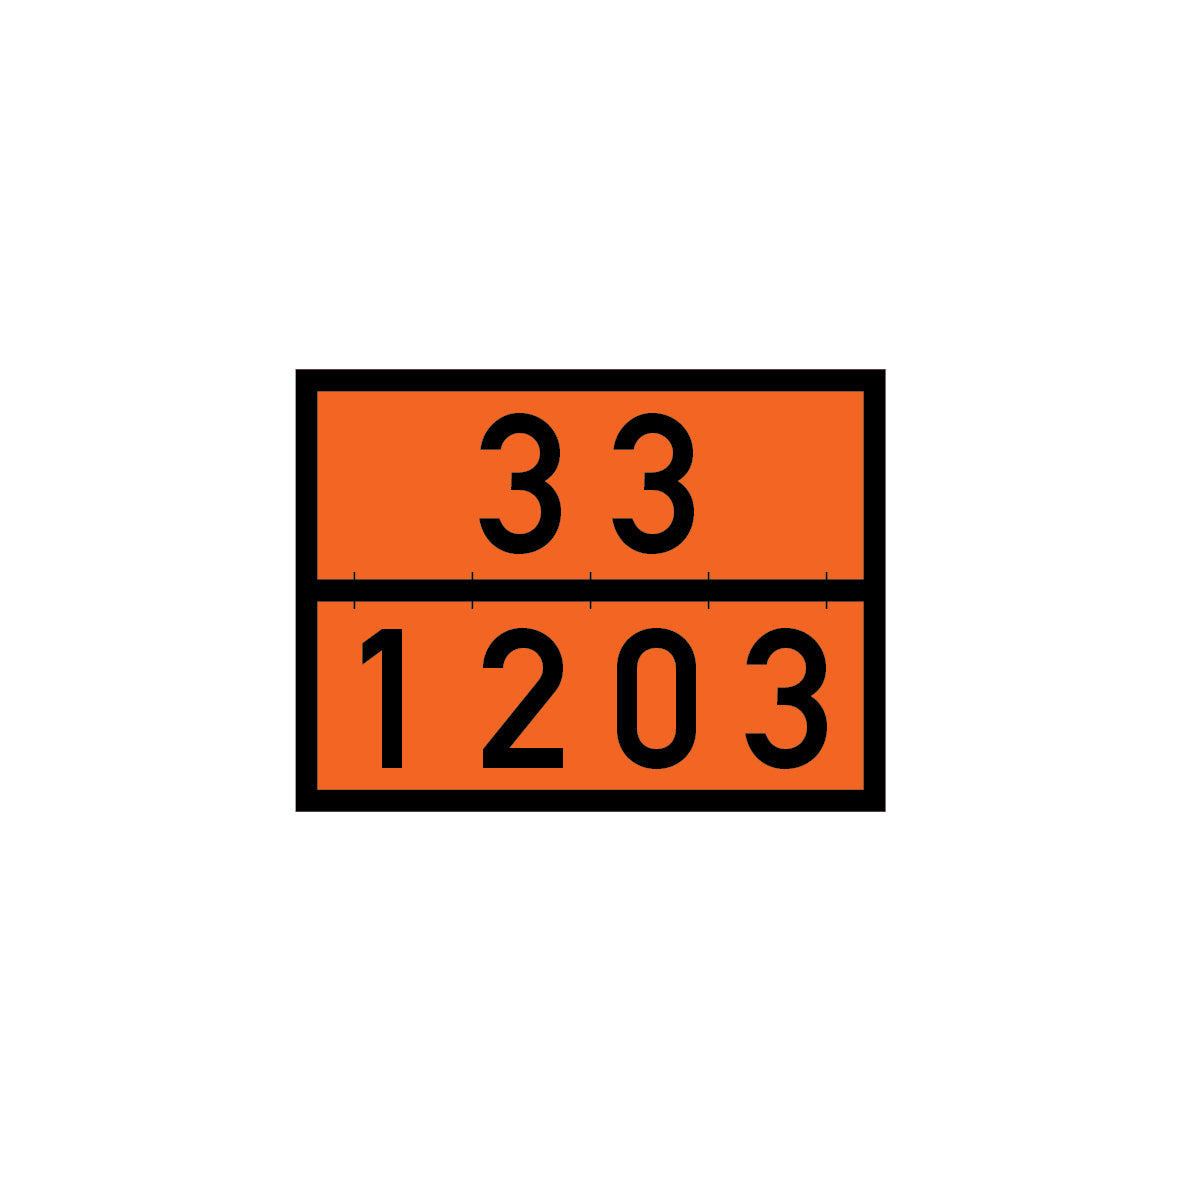 Gefahrgut 5.0131, 5.0131.5, 400/300 mm, beschriftet mit "33/1203", FO, selbstklebende Folie